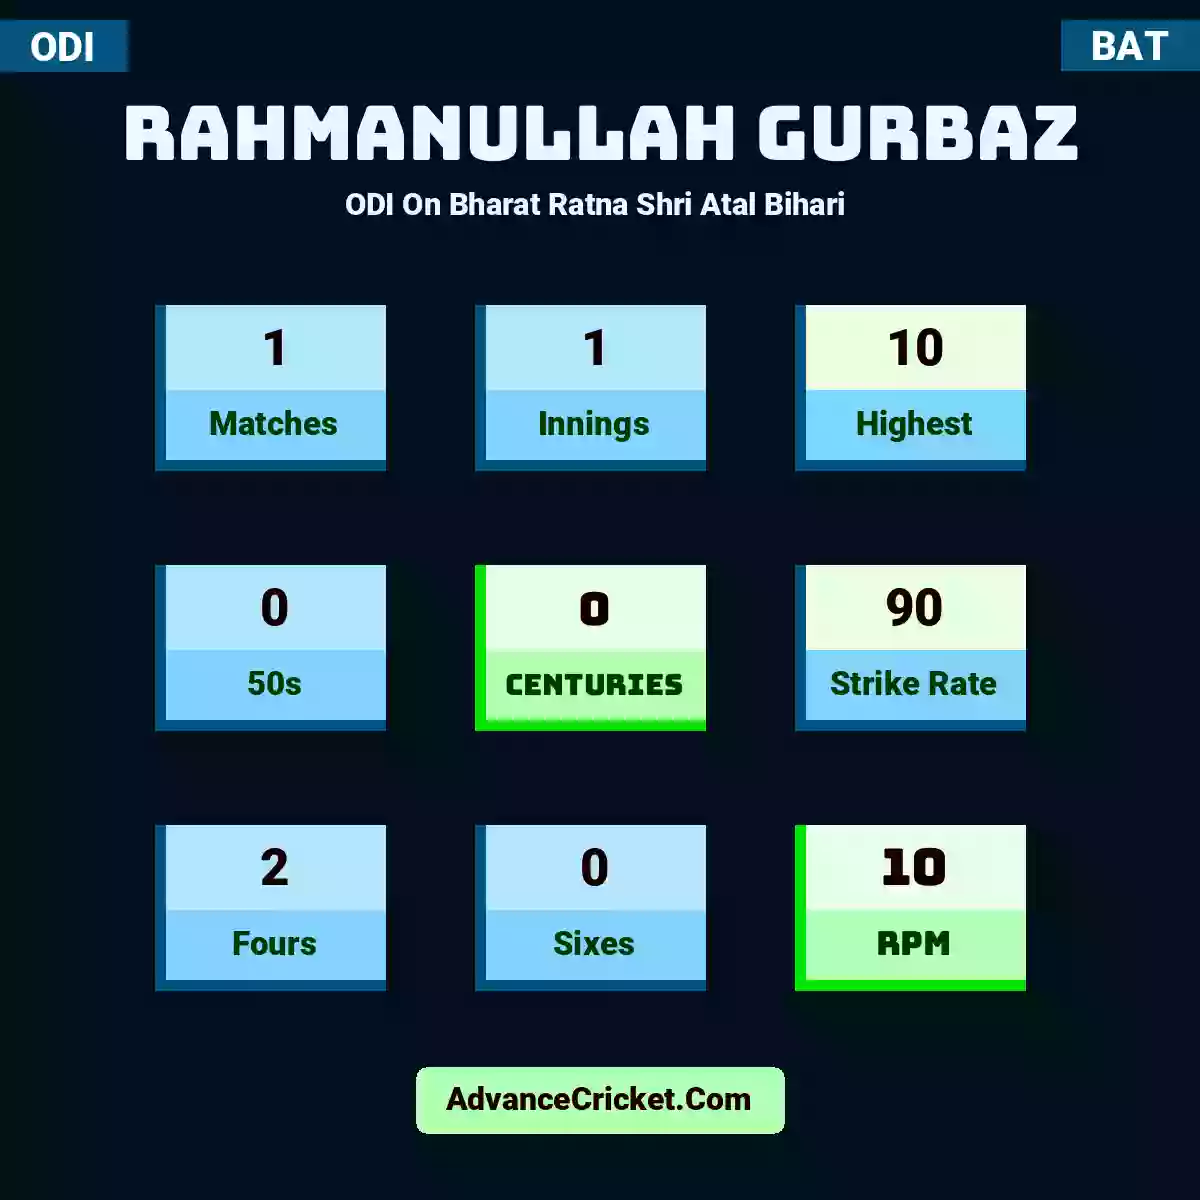 Rahmanullah Gurbaz ODI  On Bharat Ratna Shri Atal Bihari , Rahmanullah Gurbaz played 1 matches, scored 10 runs as highest, 0 half-centuries, and 0 centuries, with a strike rate of 90. R.Gurbaz hit 2 fours and 0 sixes, with an RPM of 10.